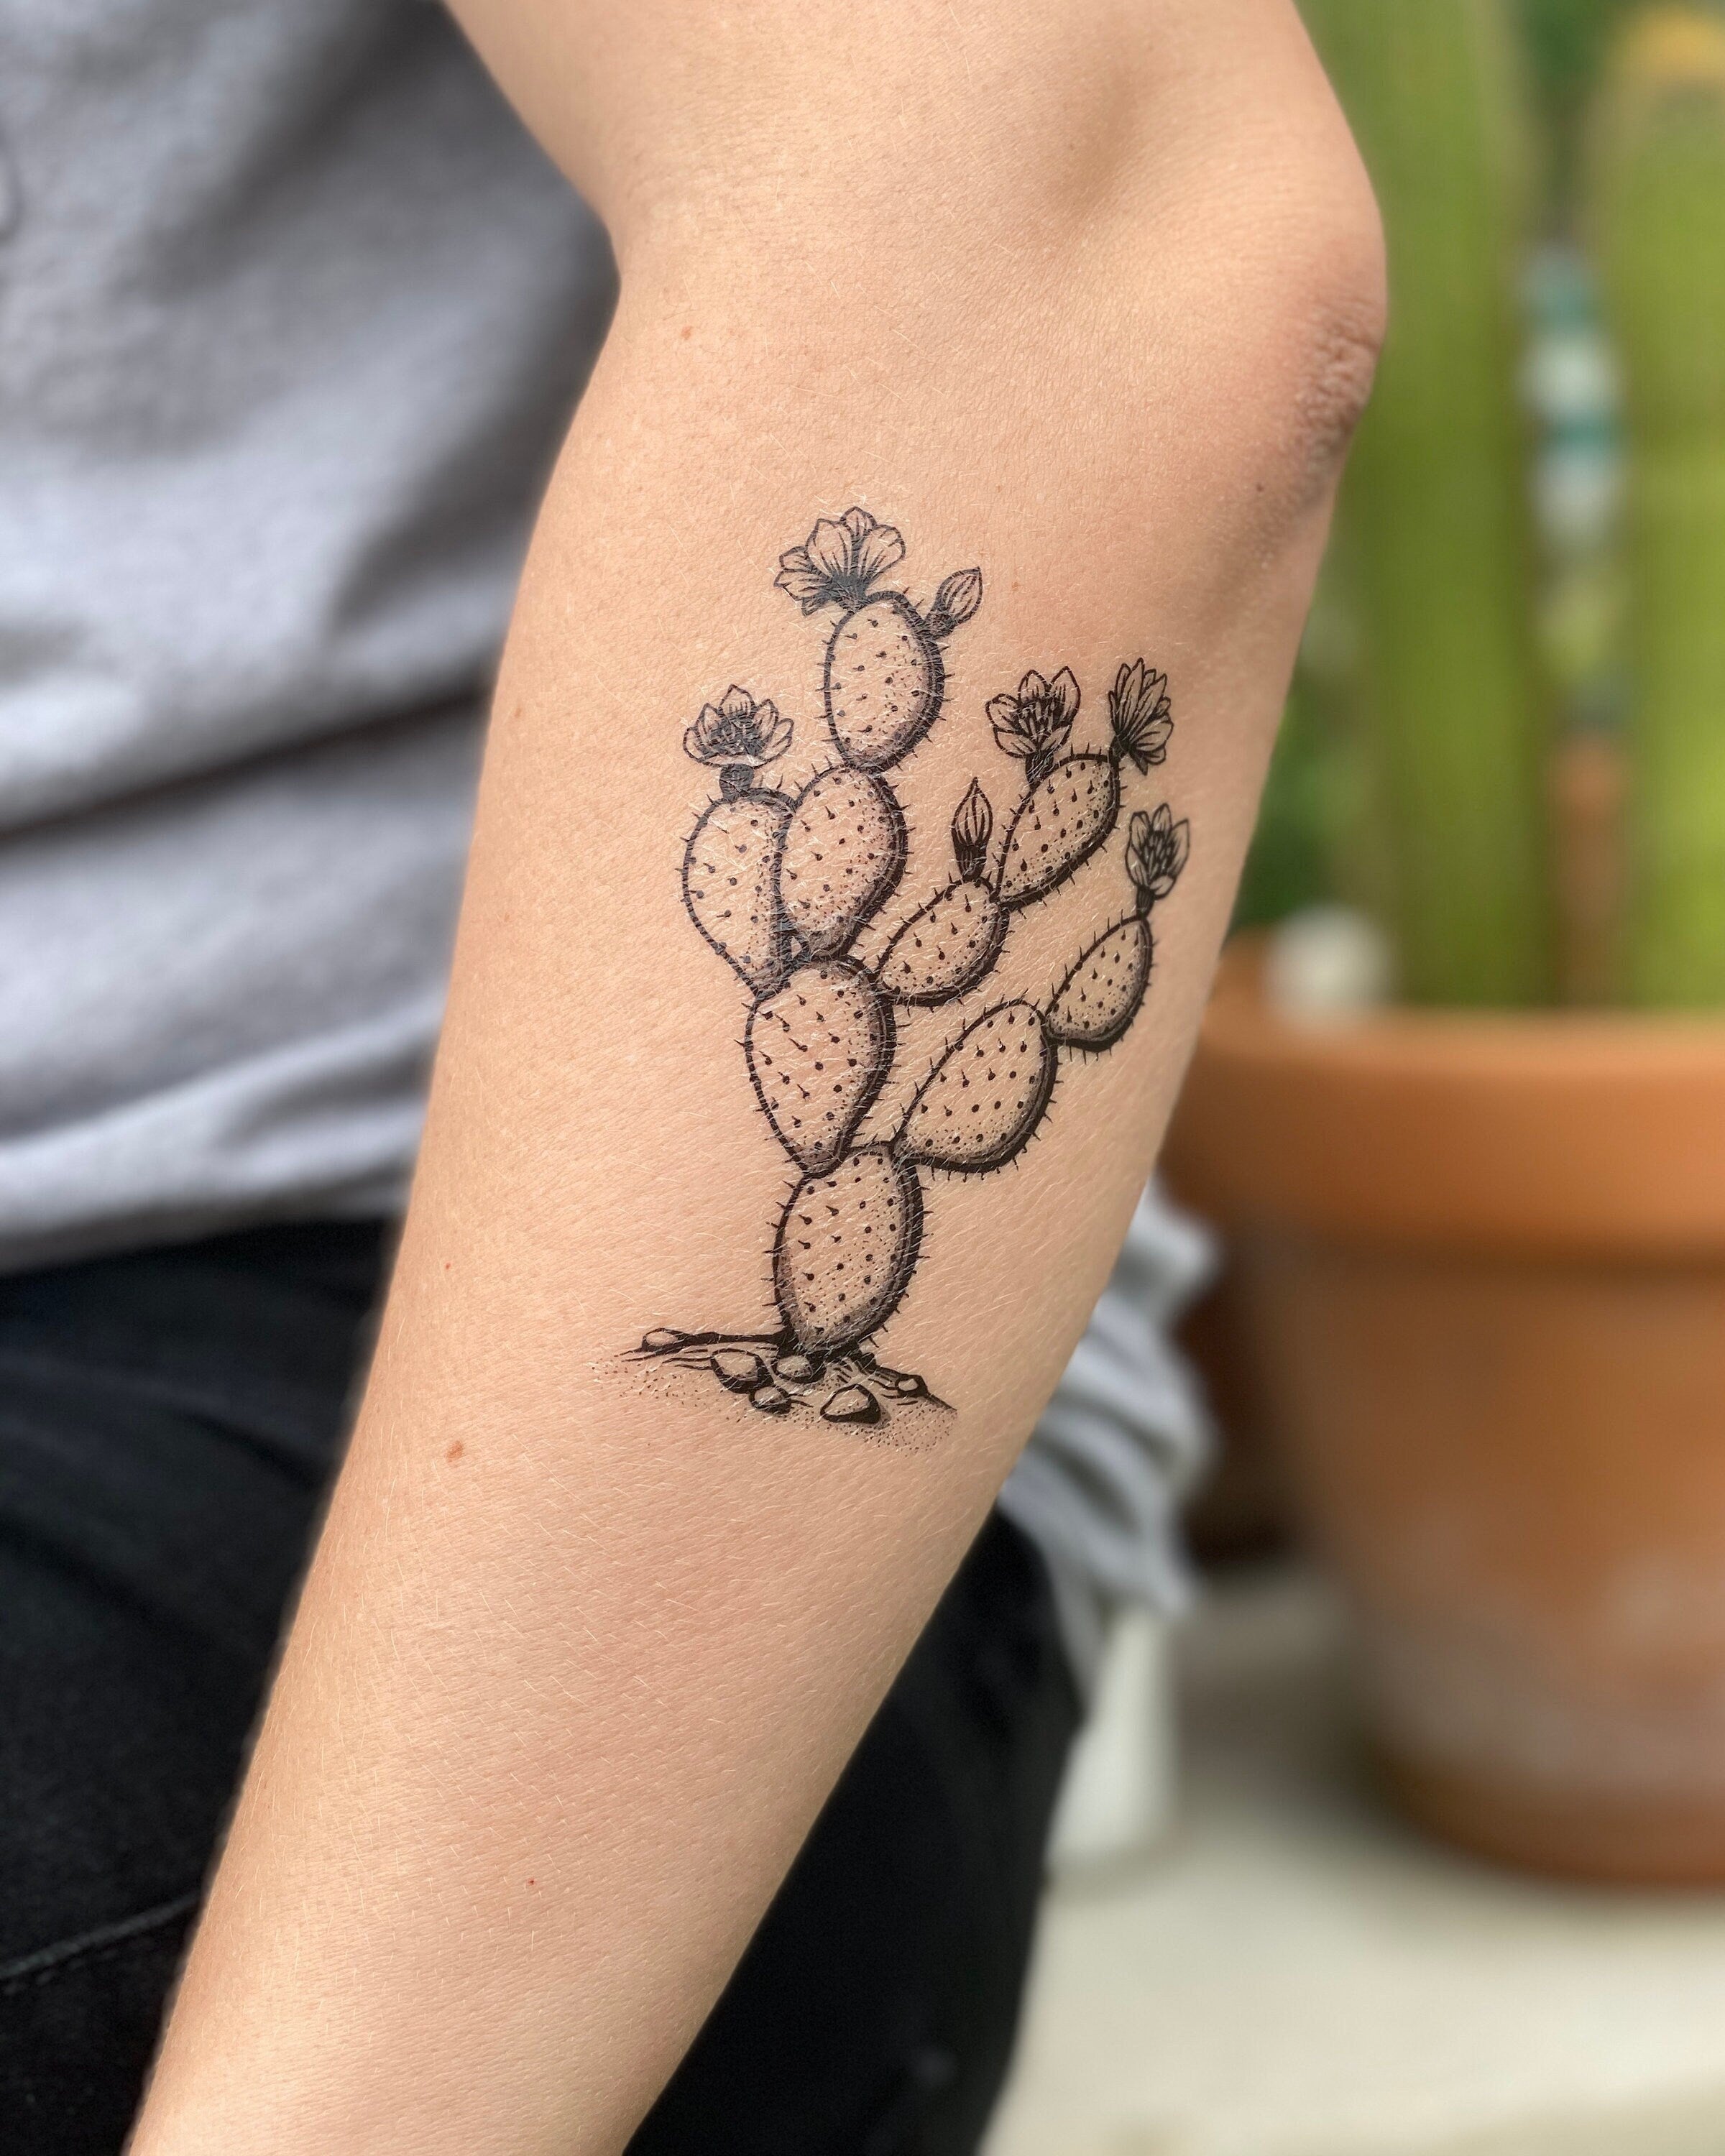 Prickly Pear Cactus Temporary Tattoo  NatureTats